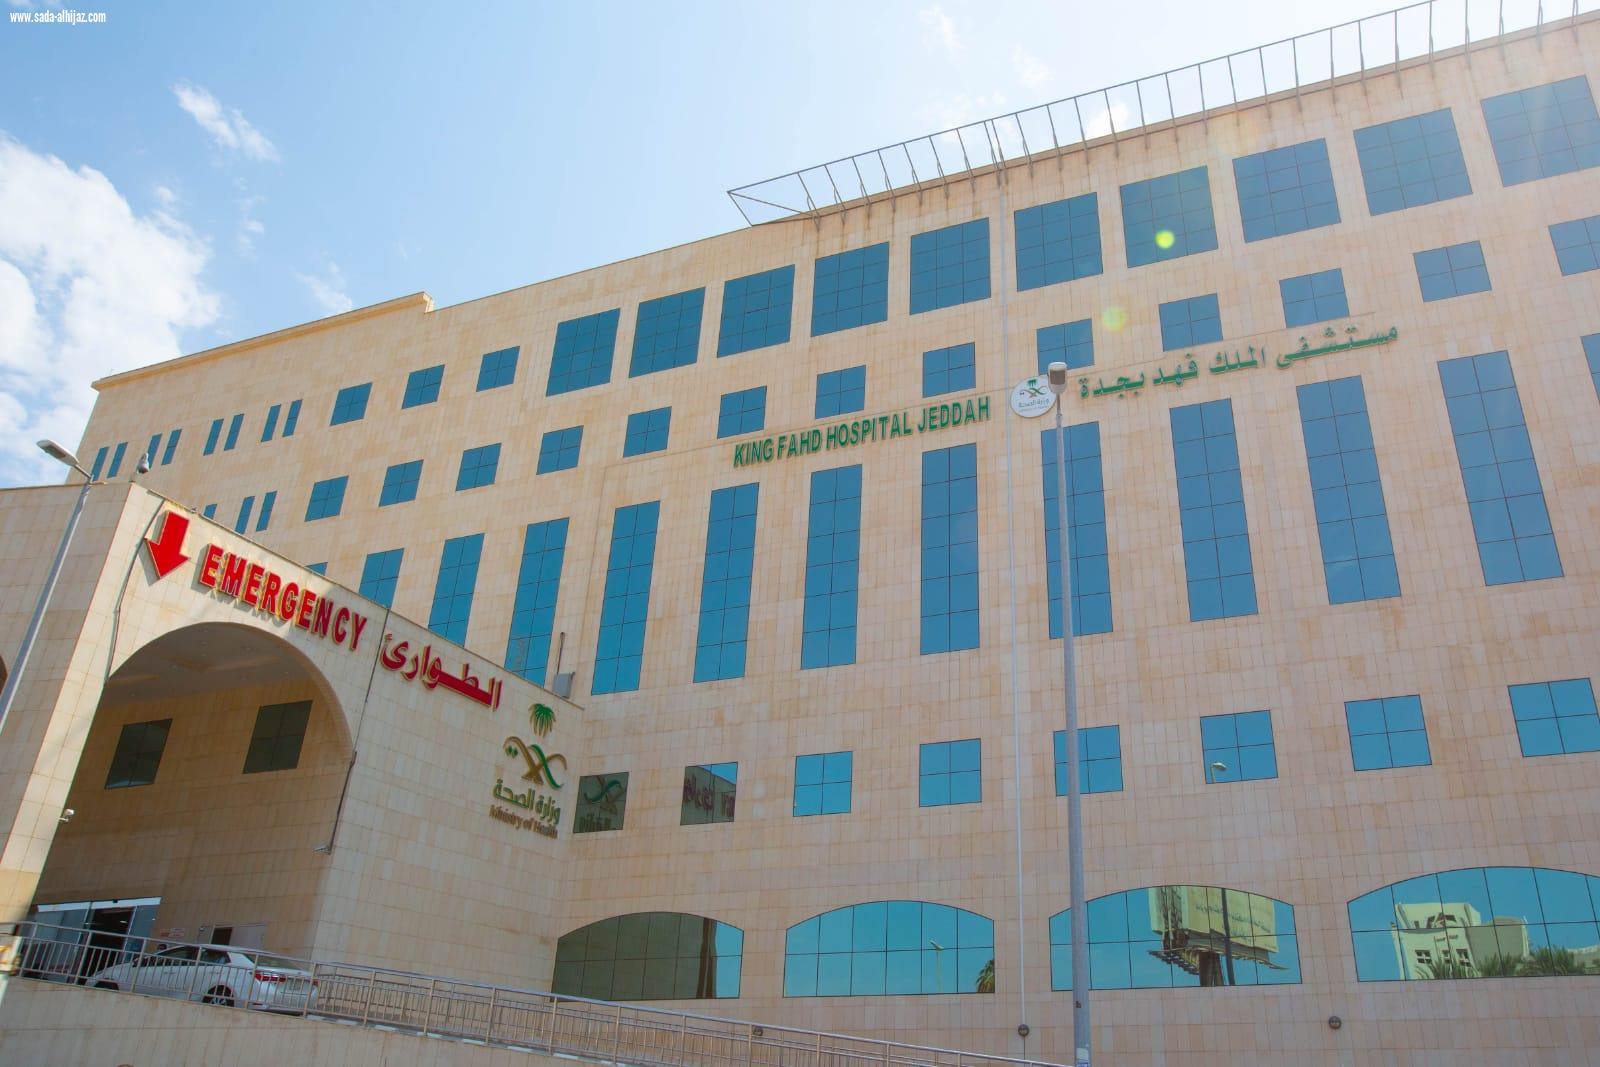 حاز على المستوى الأول ضمن المستشفيات المتميزة | مستشفى الملك فهد بجدة الاول على مستوى مستشفيات المملكة